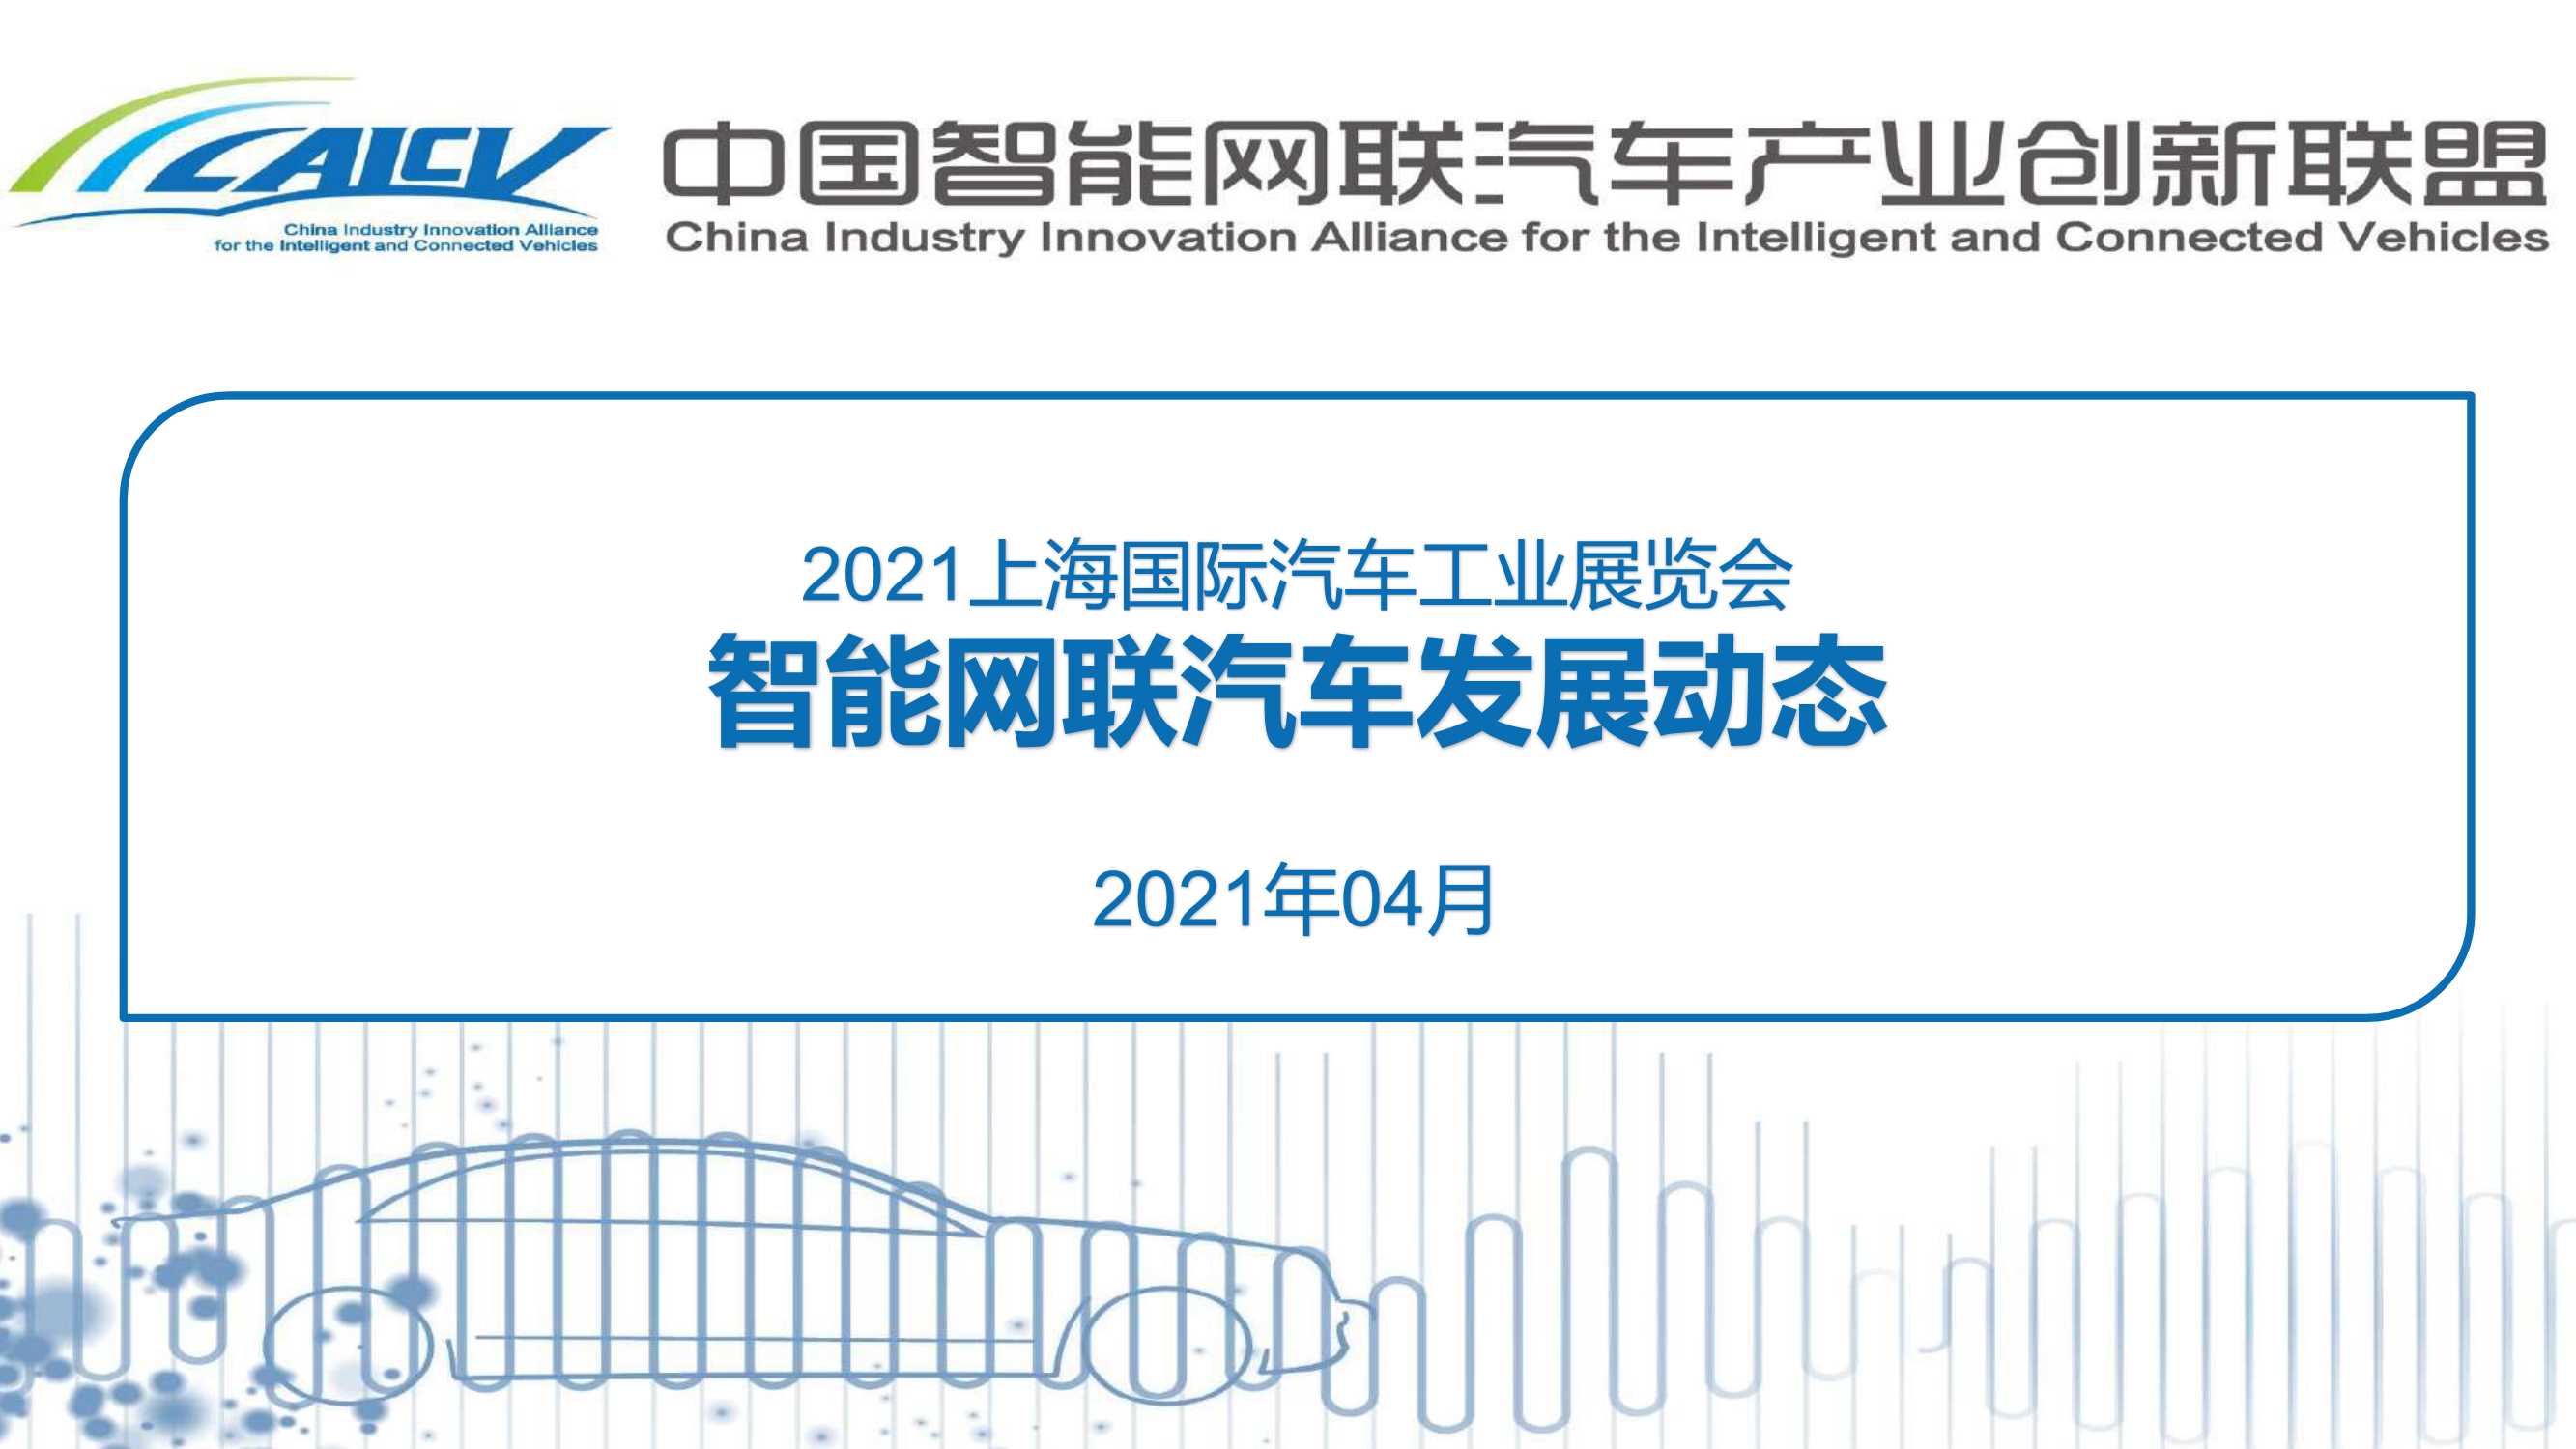 CAICV-2021上海国际汽车工业展览会智能网联汽车发展动态-2021.04-41页